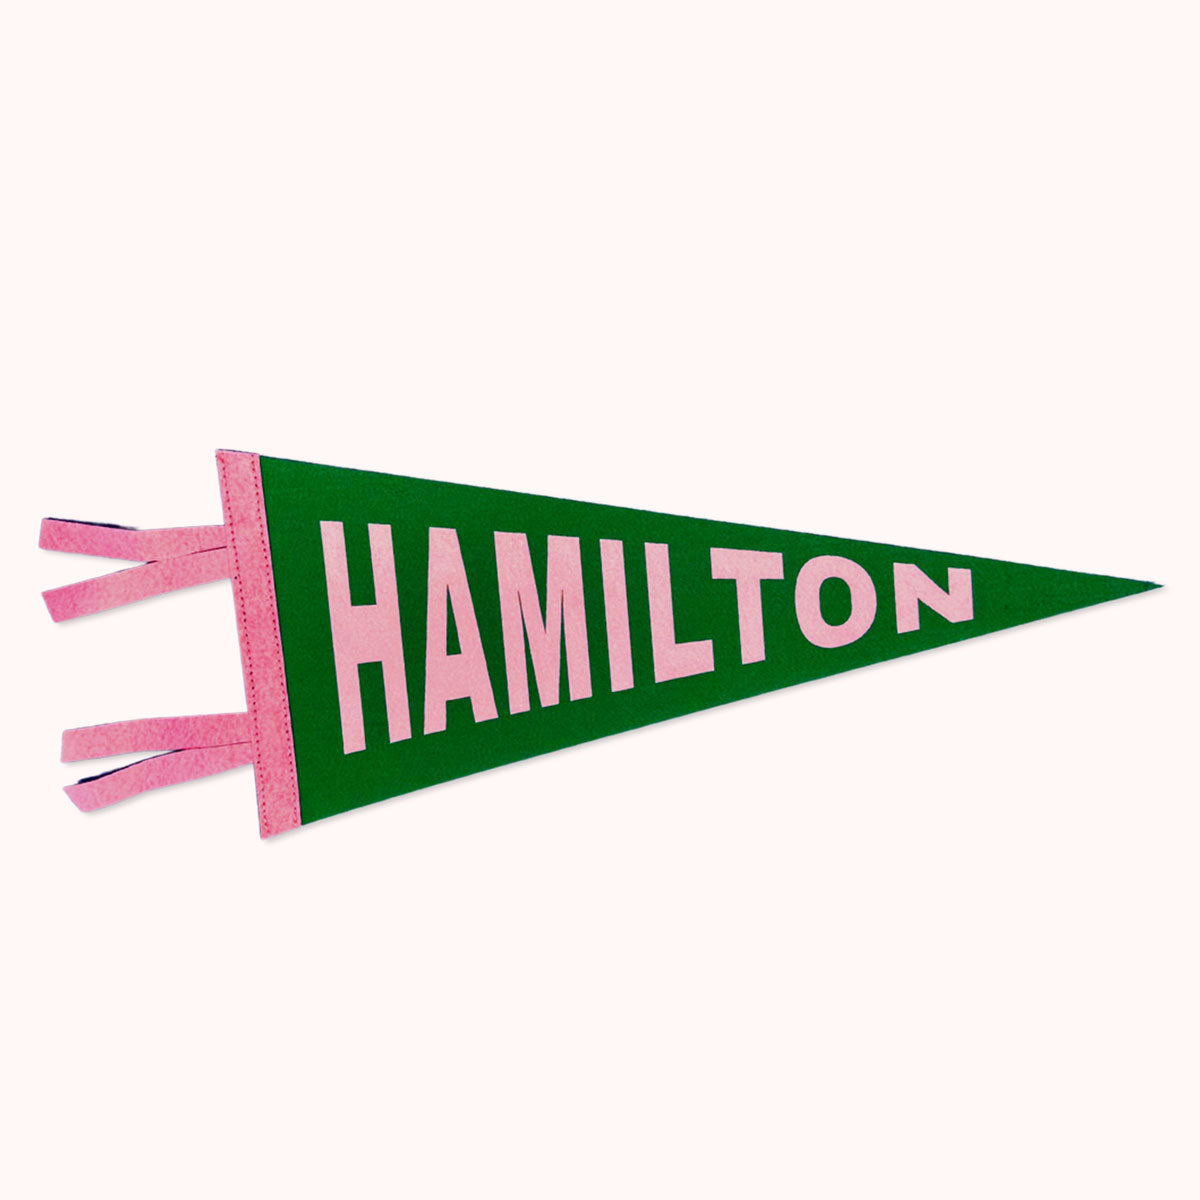 Hamilton Pennant Flag